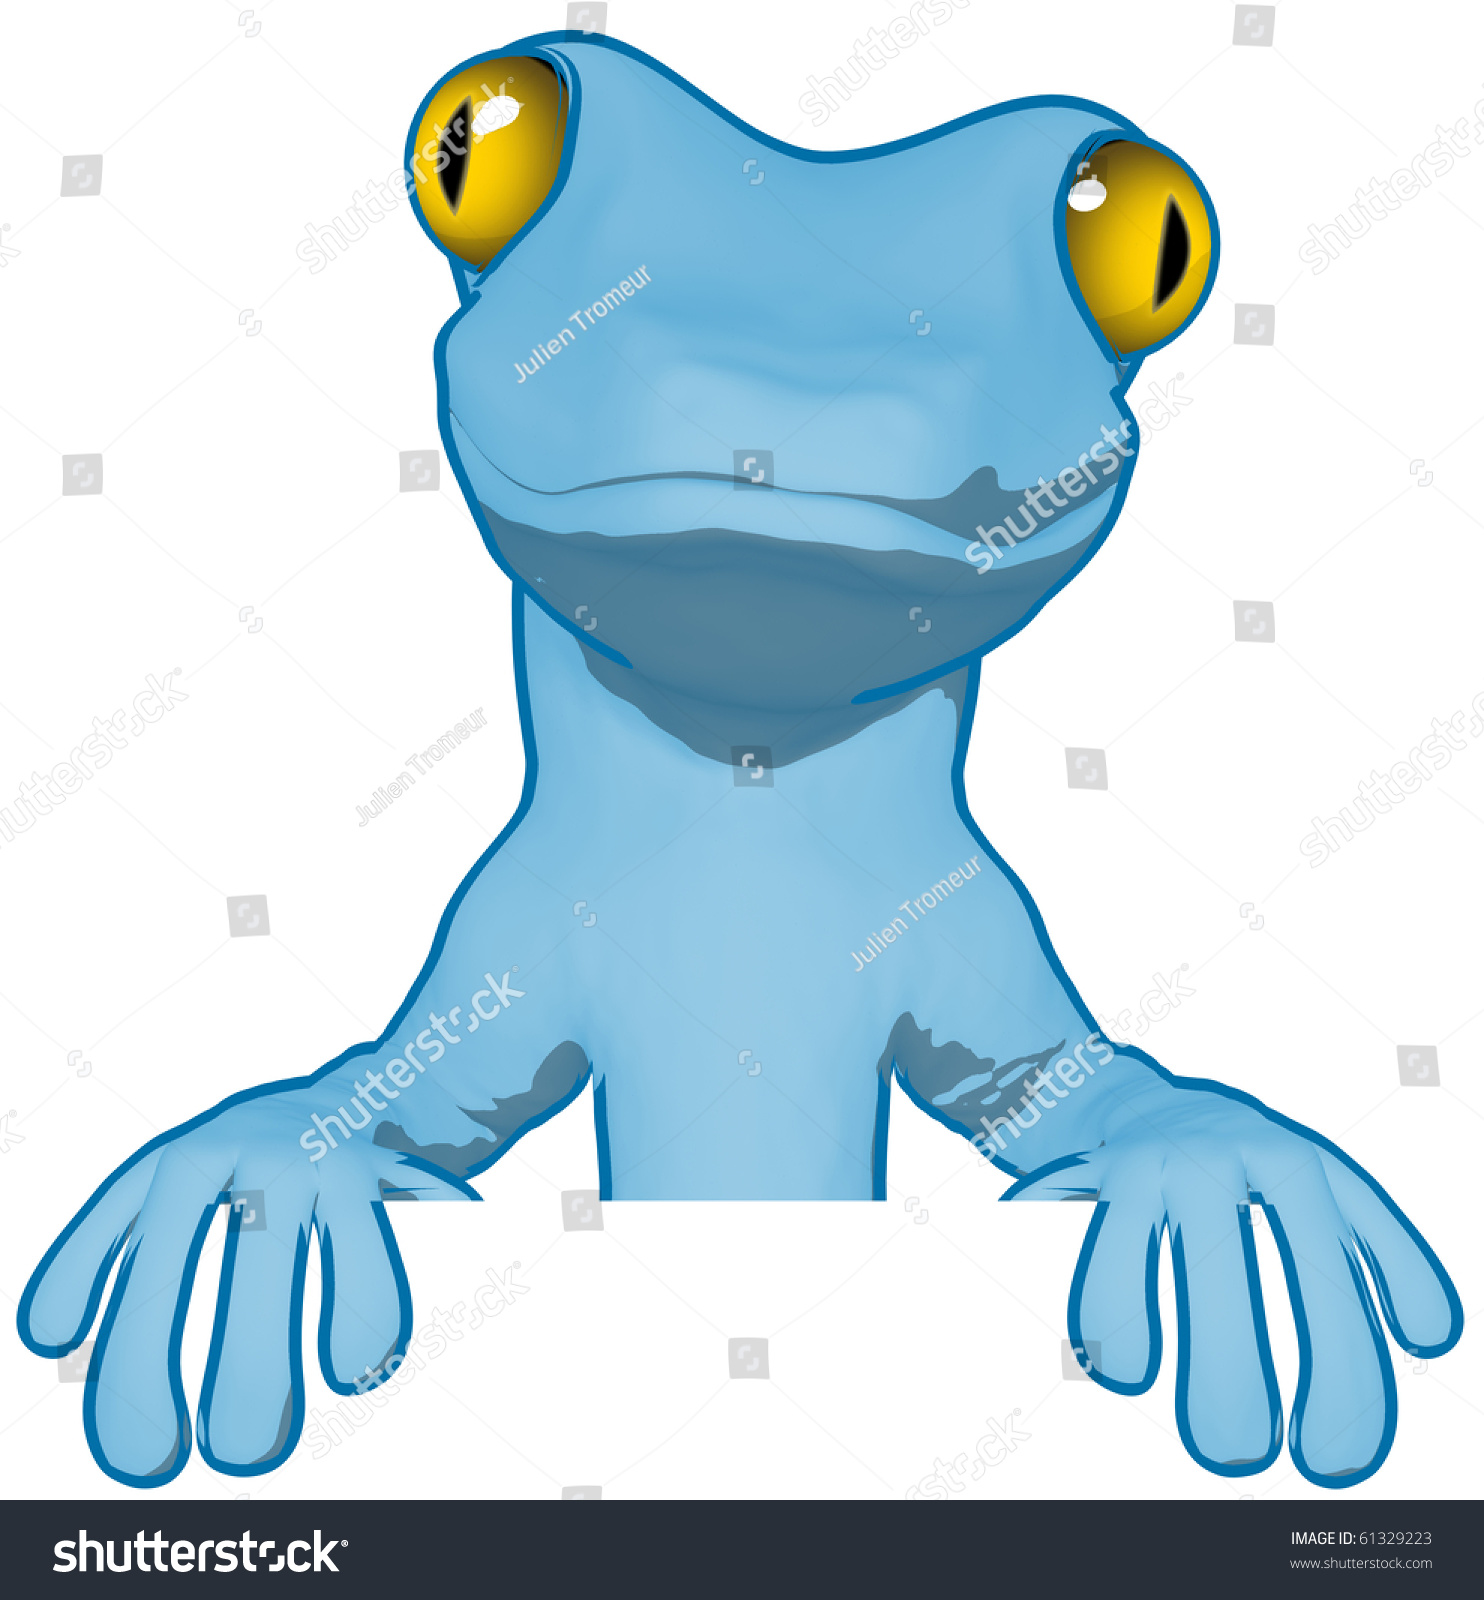 Cartoon Gecko Stock Photo 61329223 : Shutterstock